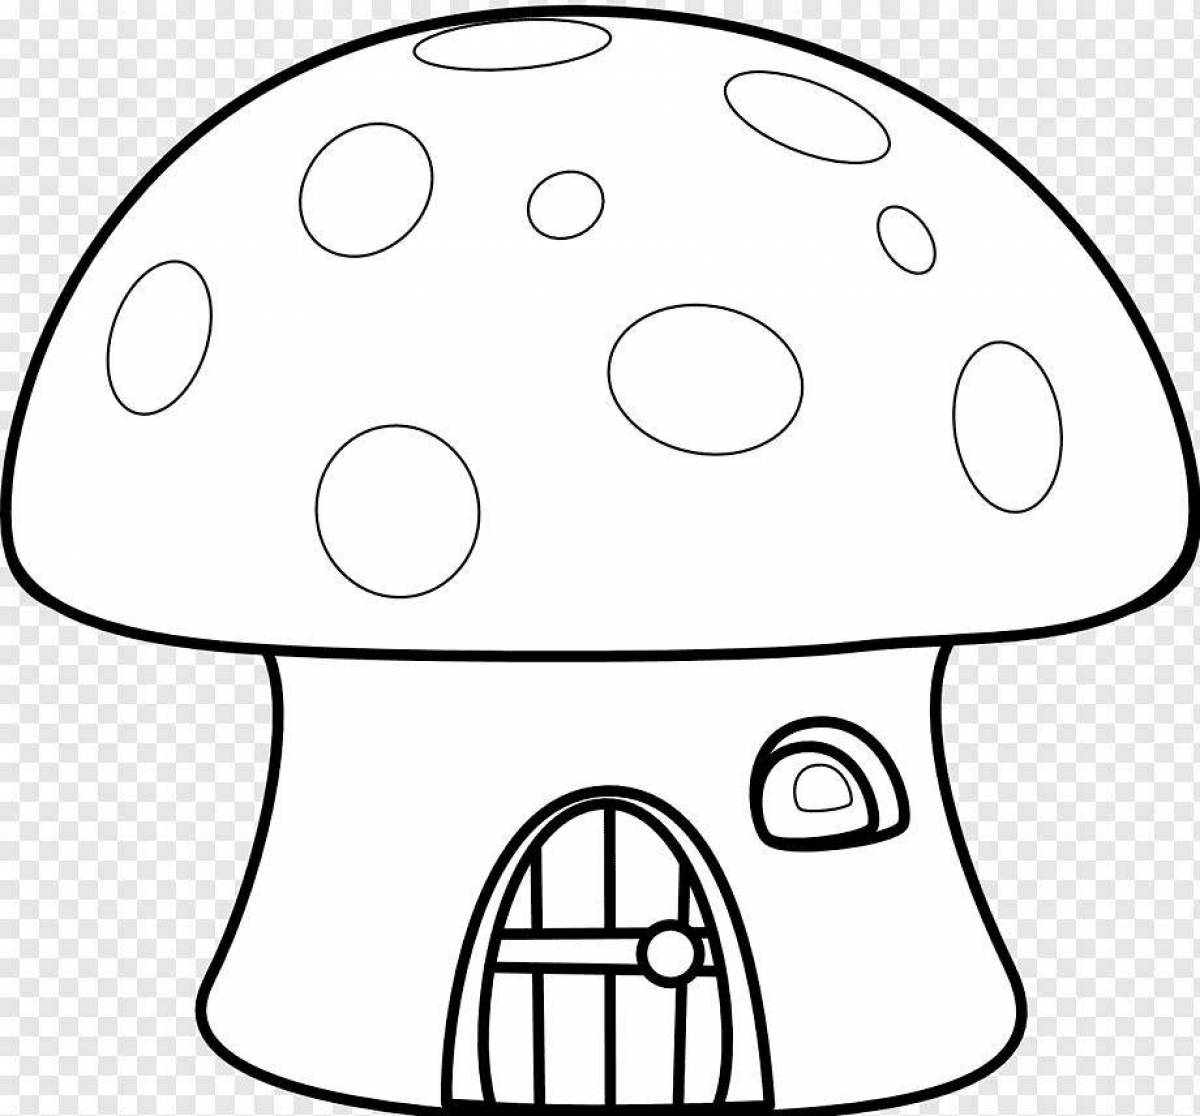 Увлекательная раскраска грибов